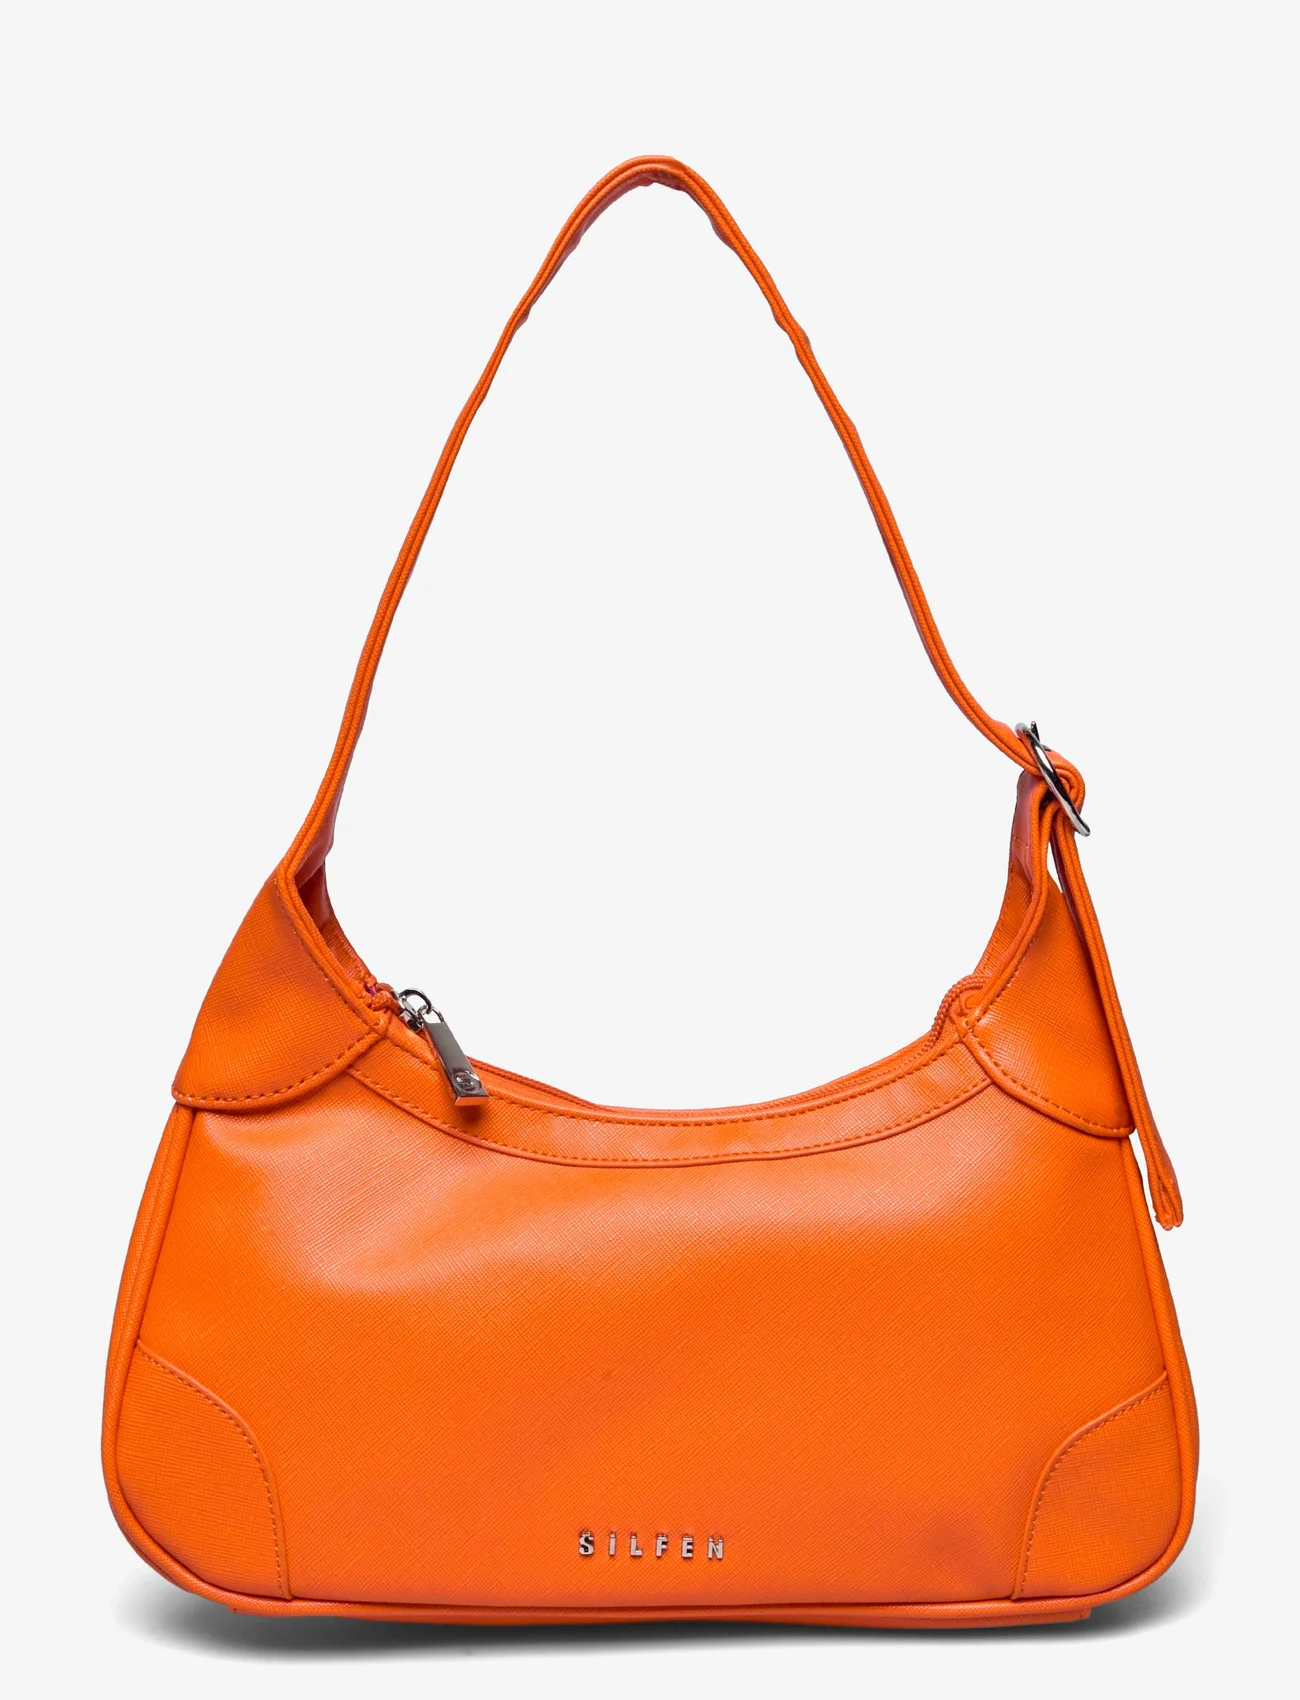 Silfen - Shoulder Bag Thora - odzież imprezowa w cenach outletowych - peachy orange - 0